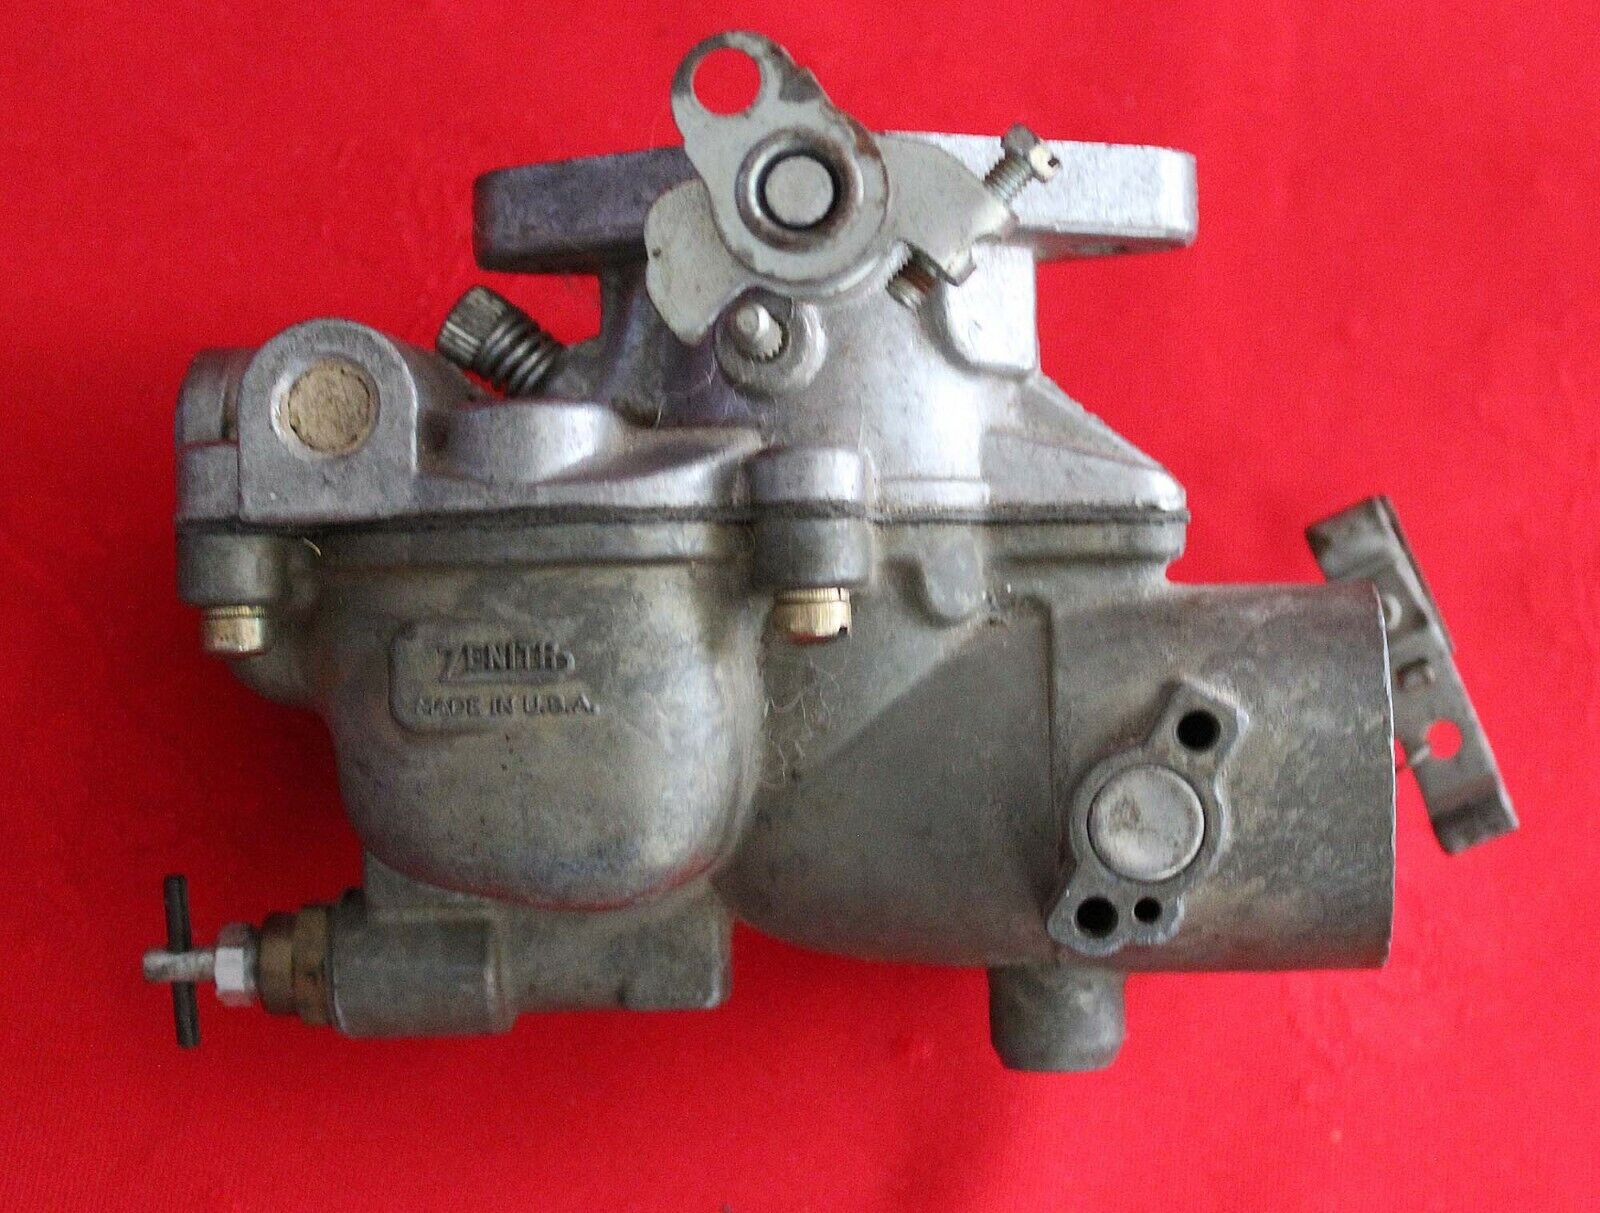 Zenith Tractor Carburetor